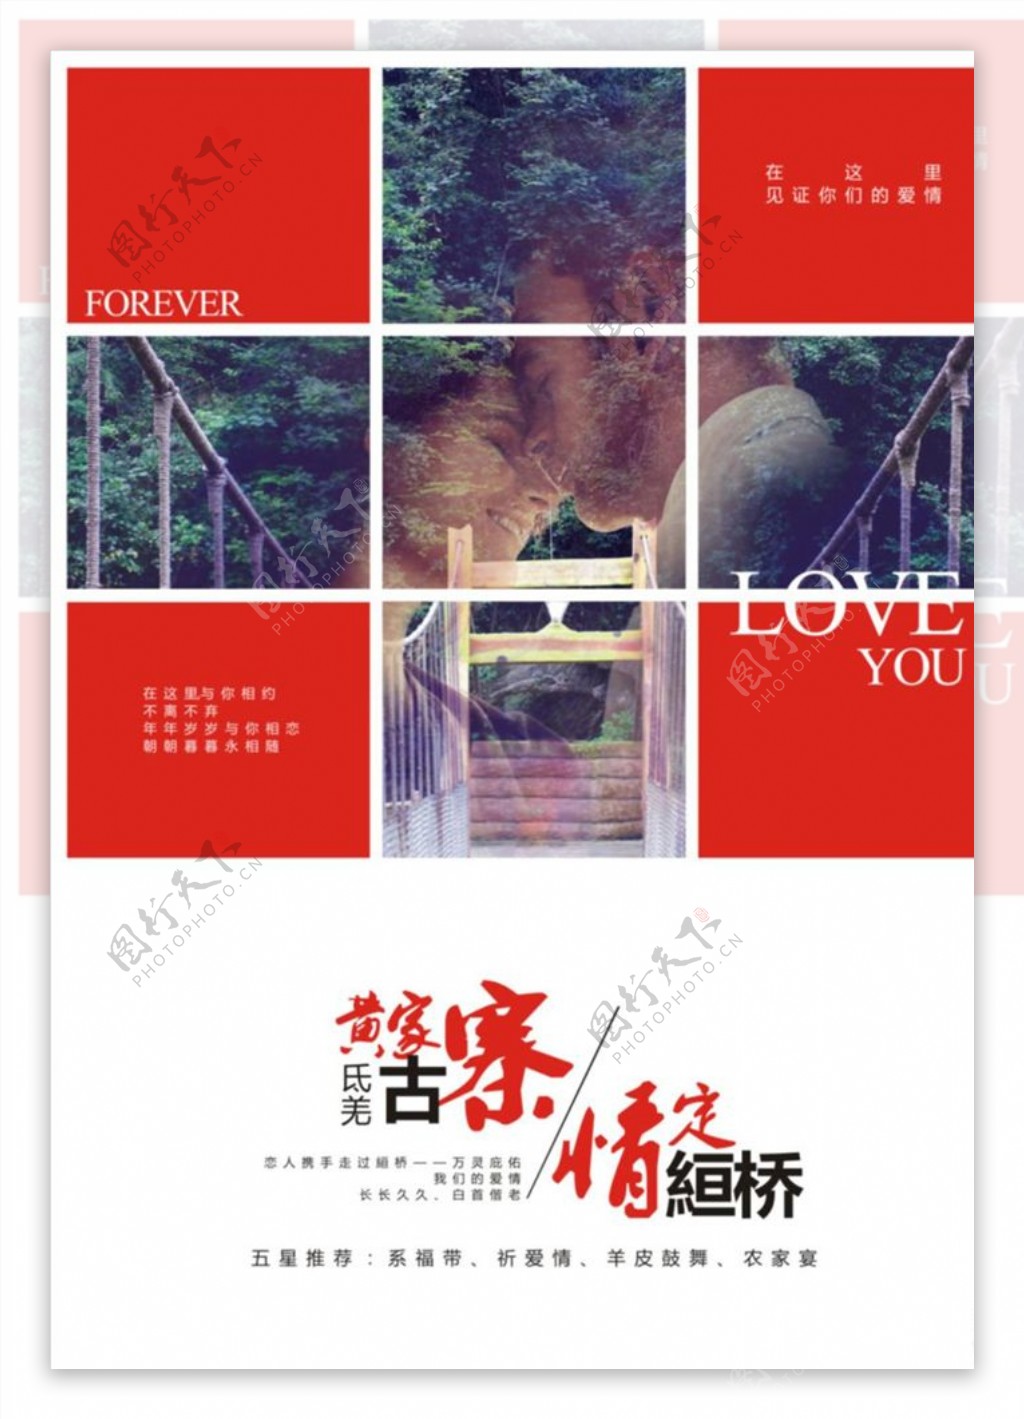 黄家寨农家乐海报宣传活动模板源